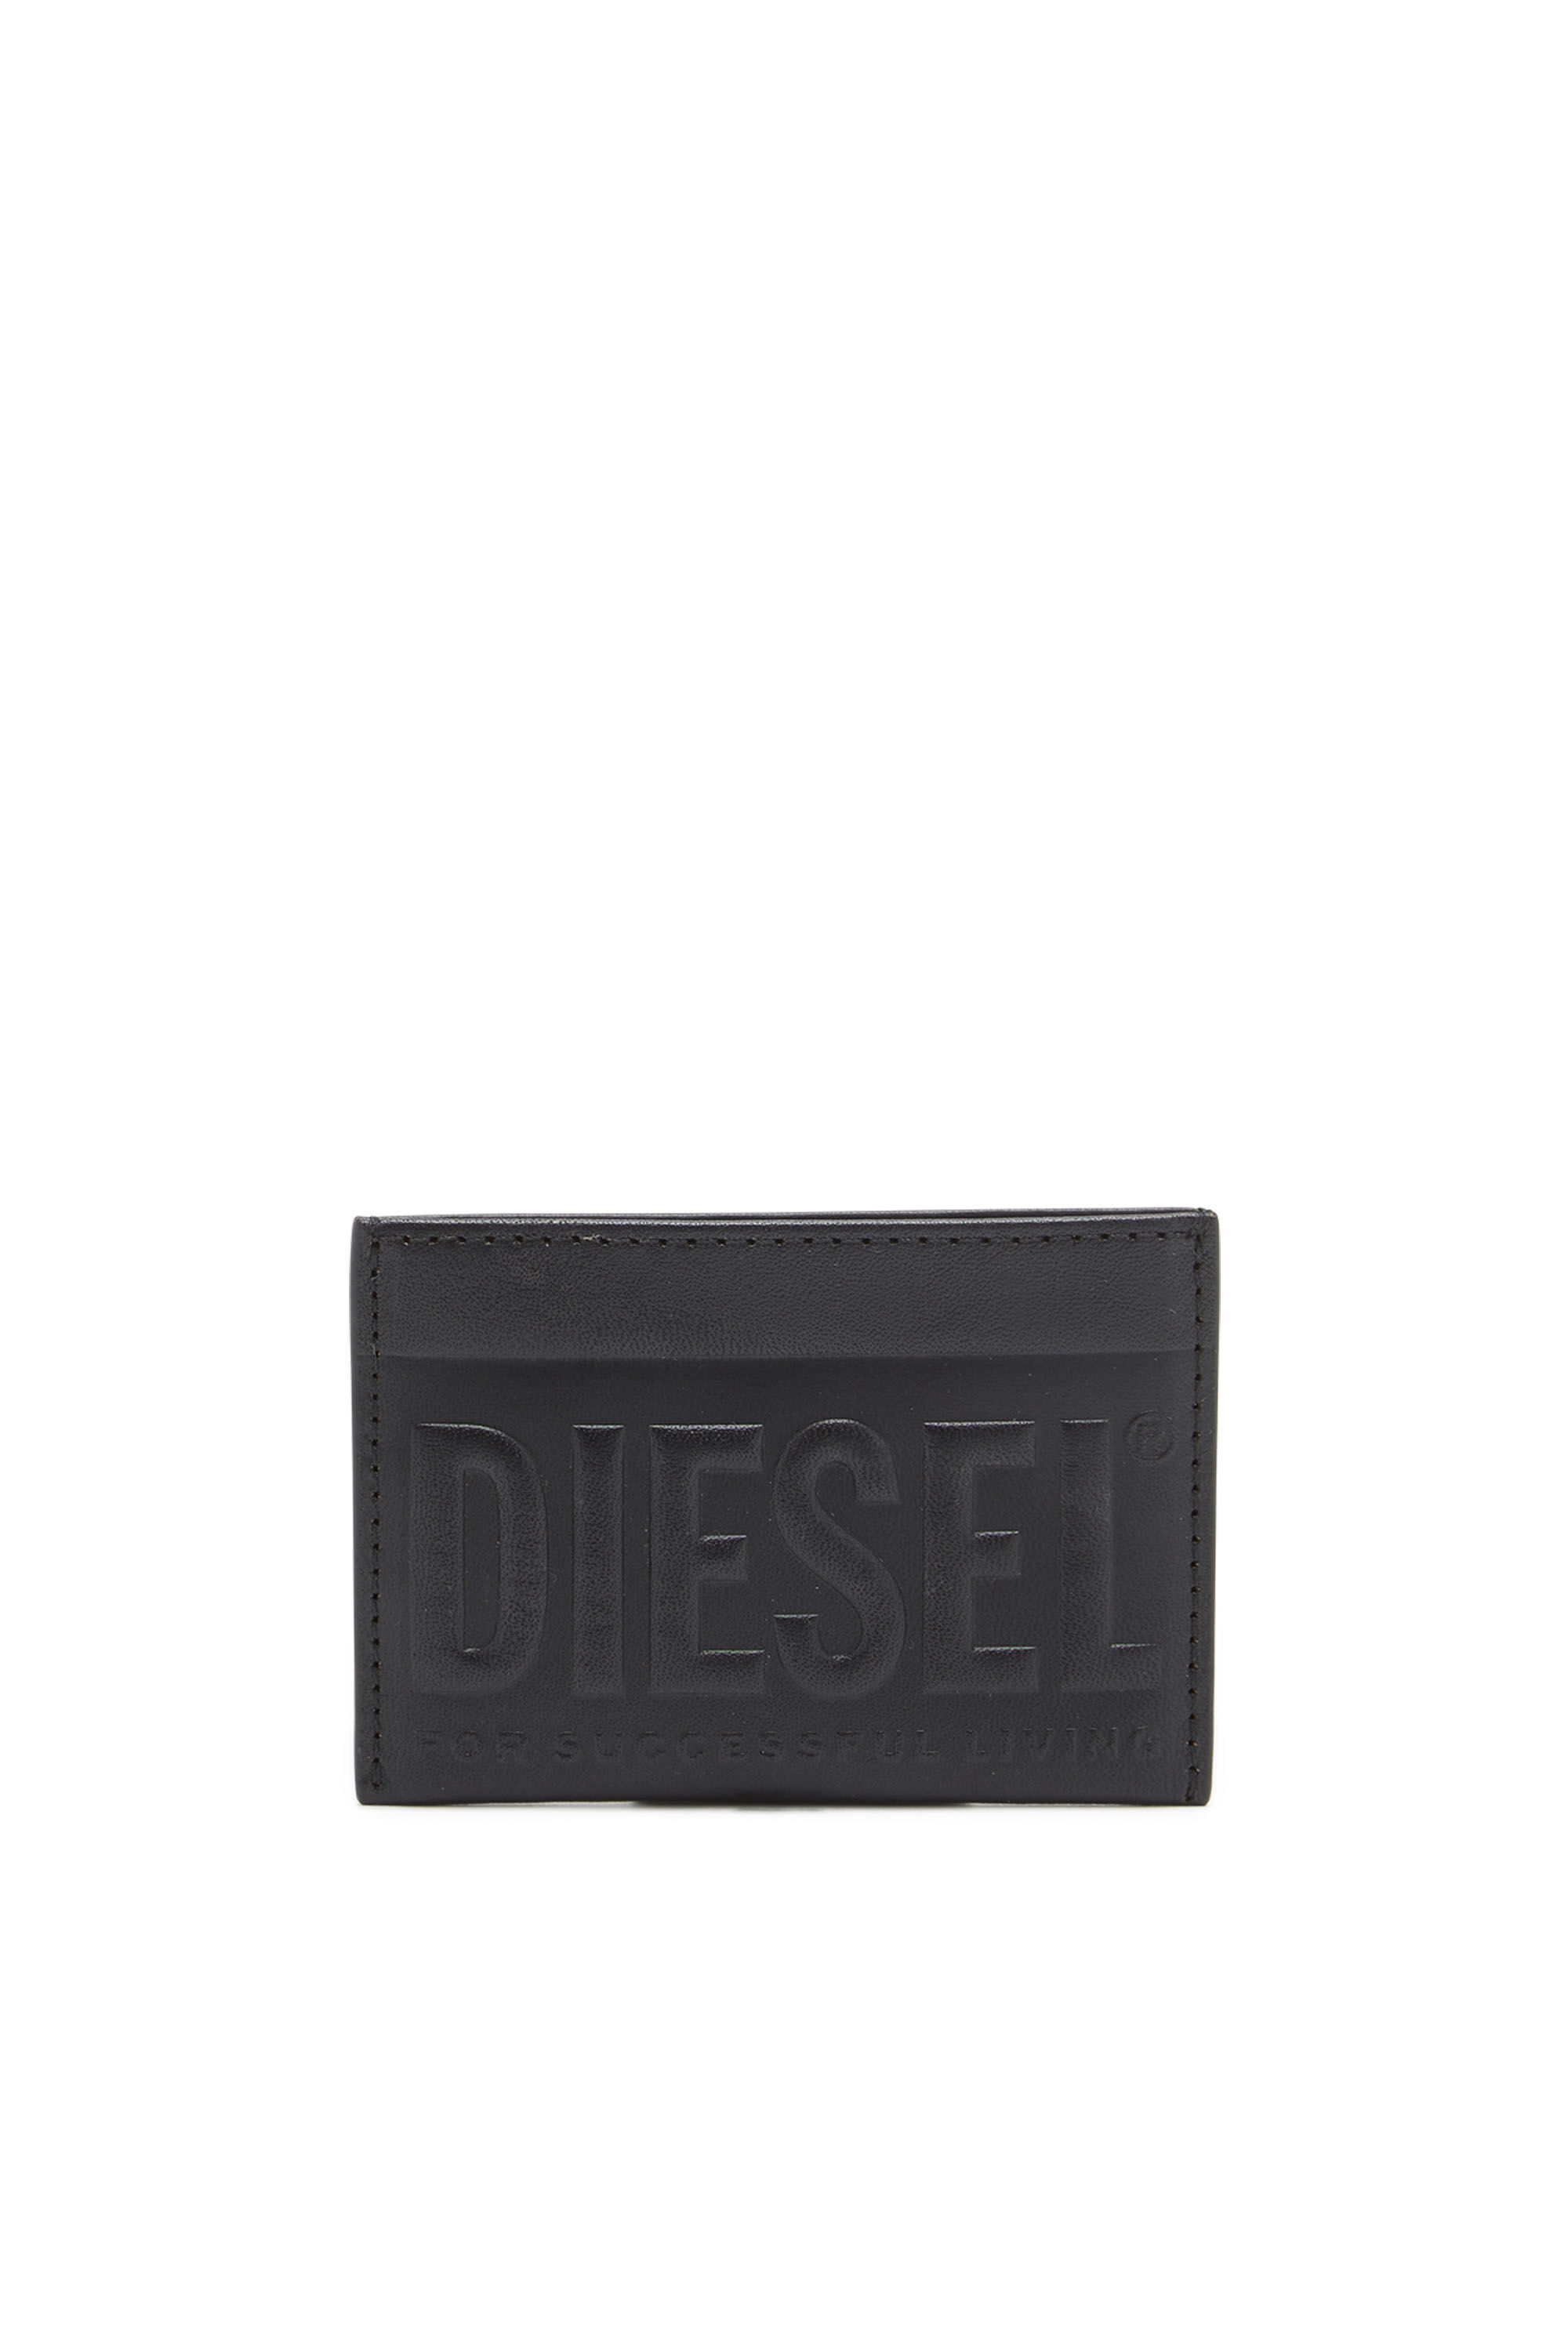 Diesel - DSL 3D EASY CARD HOLDER, Black - Image 1